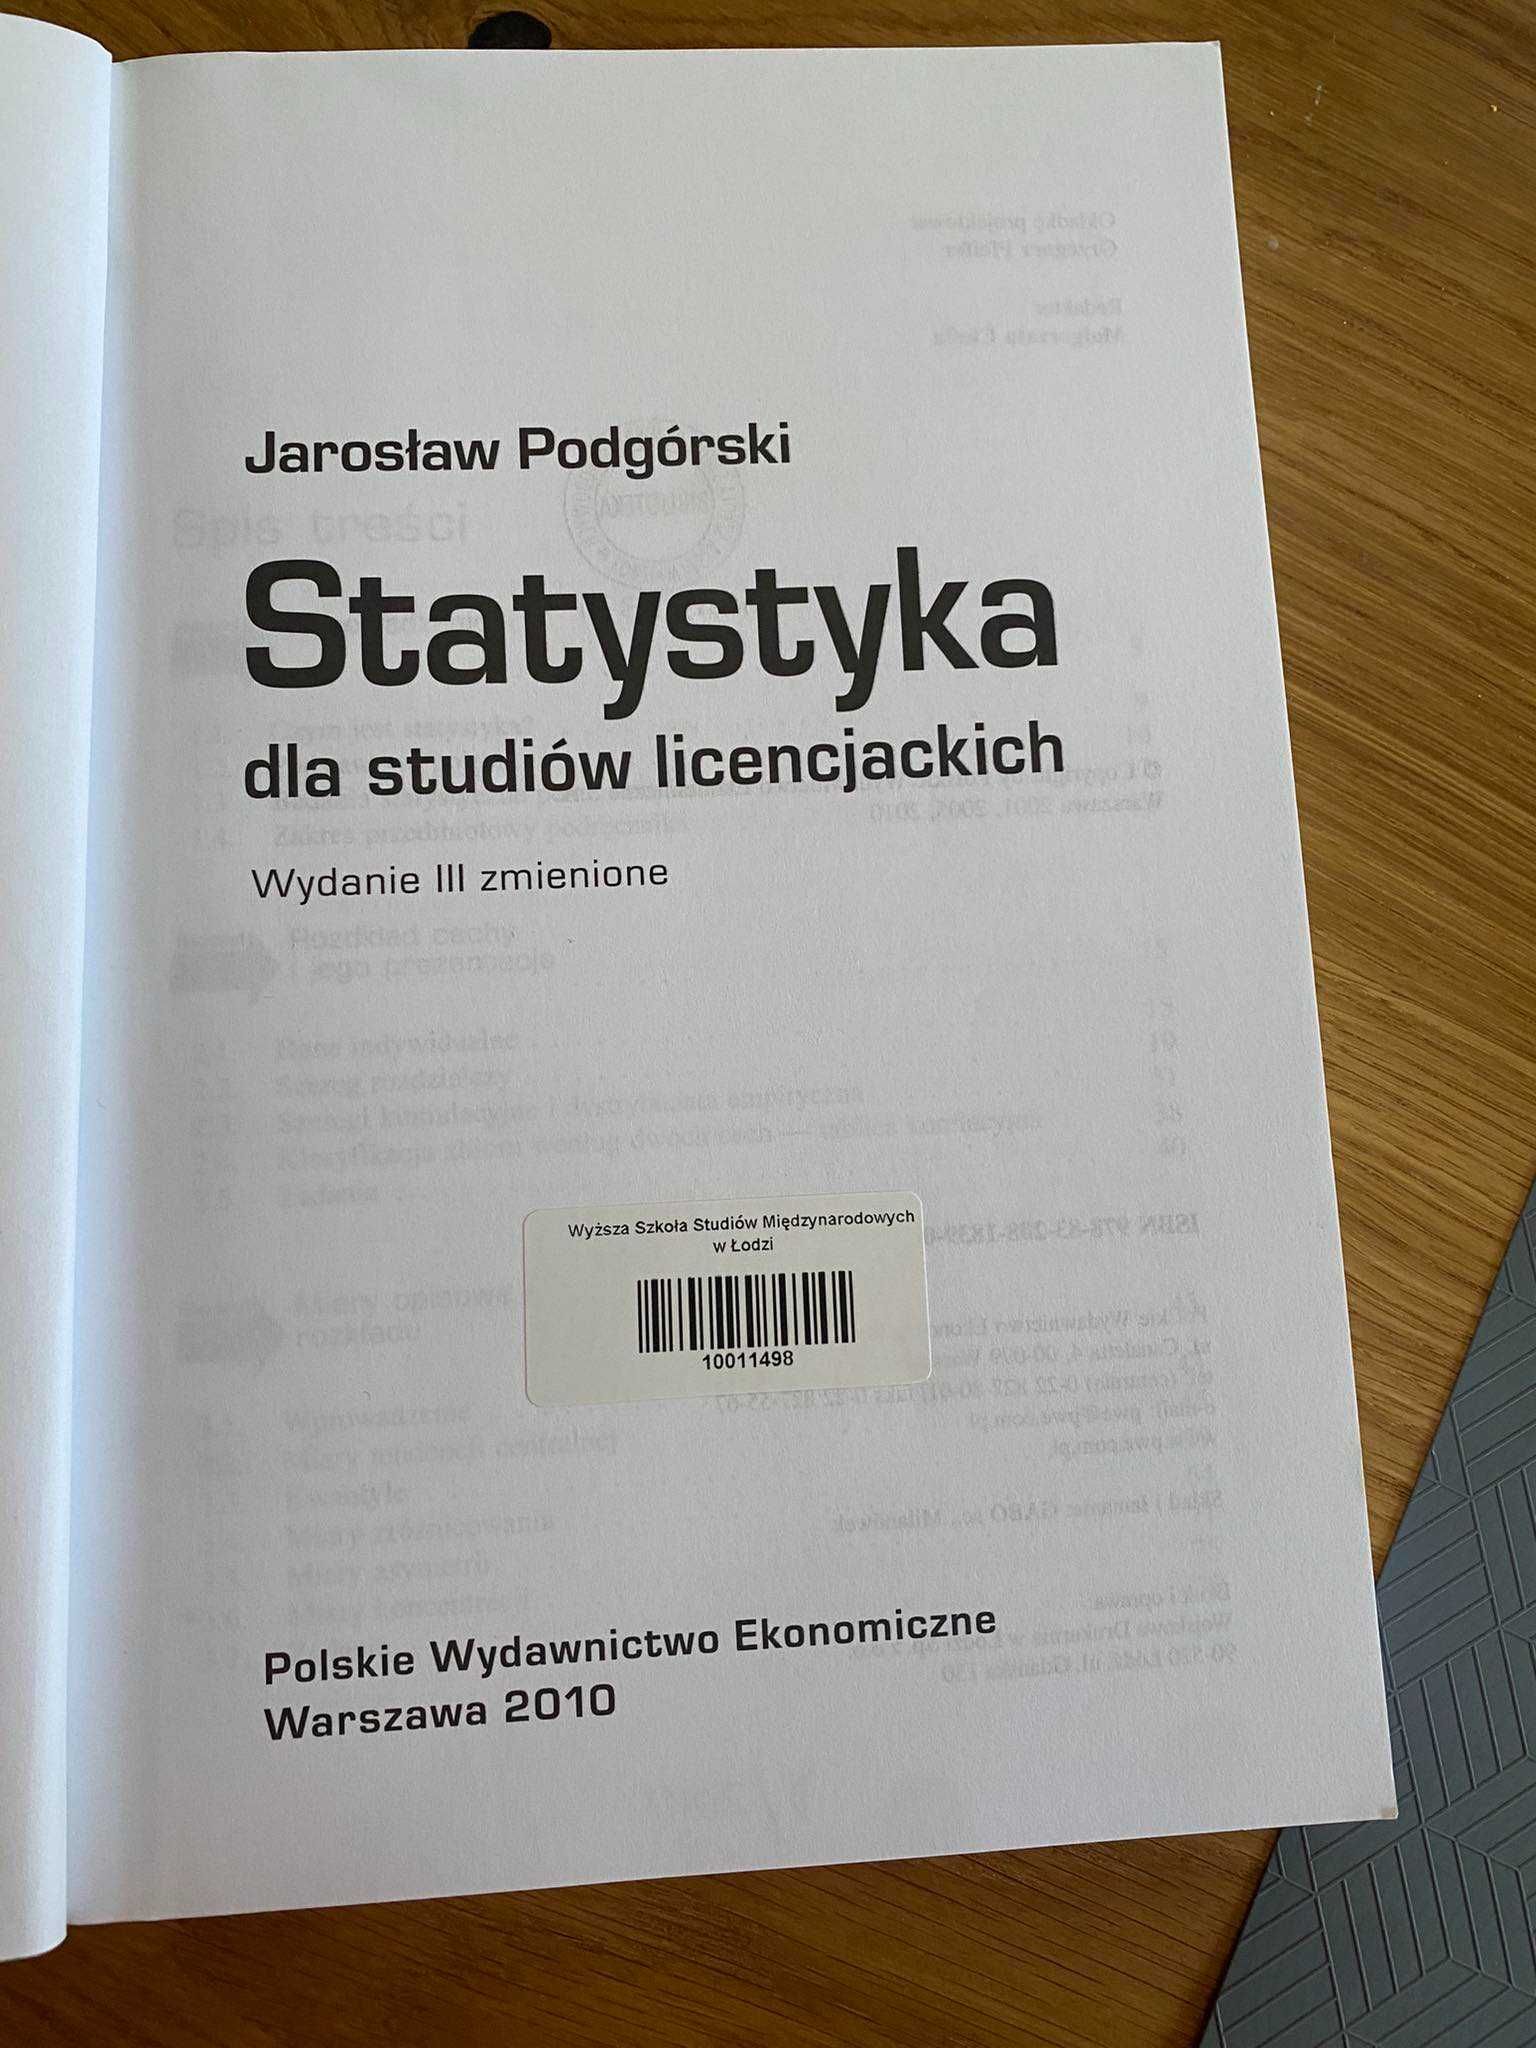 Statystyka dla studiów licencjackich Jarosław Podgórski